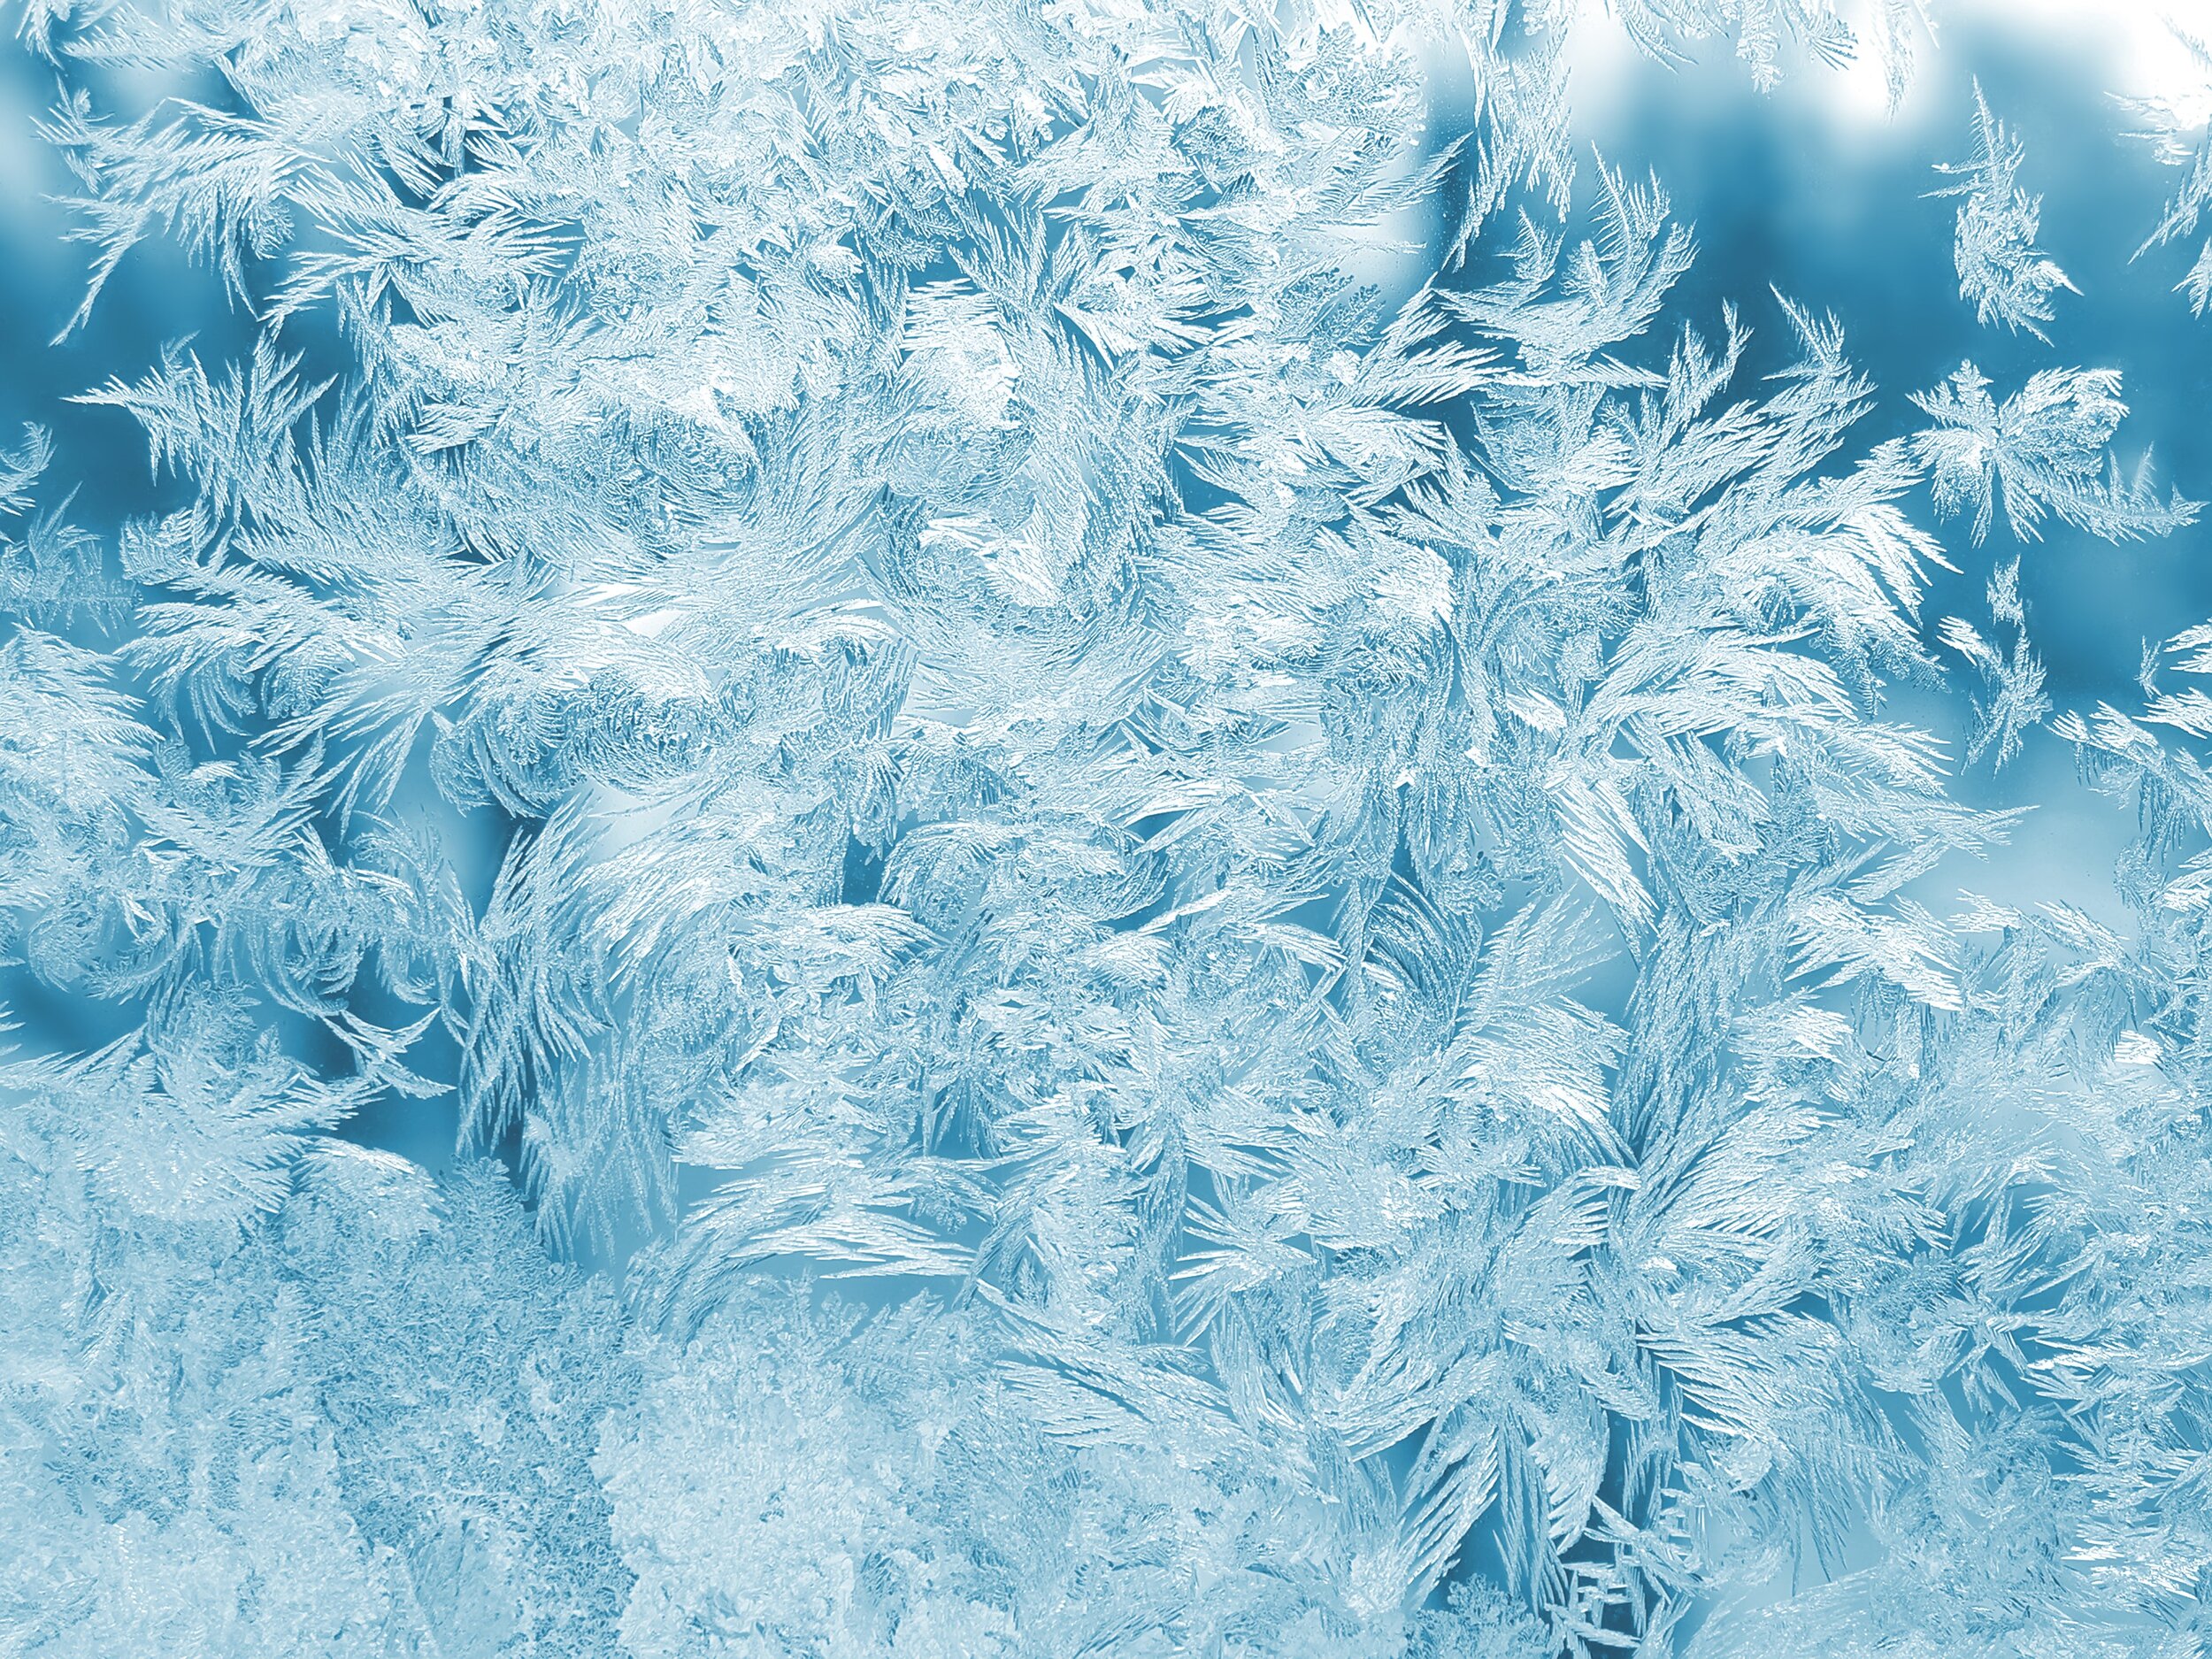 frozen glass by pexels.jpg